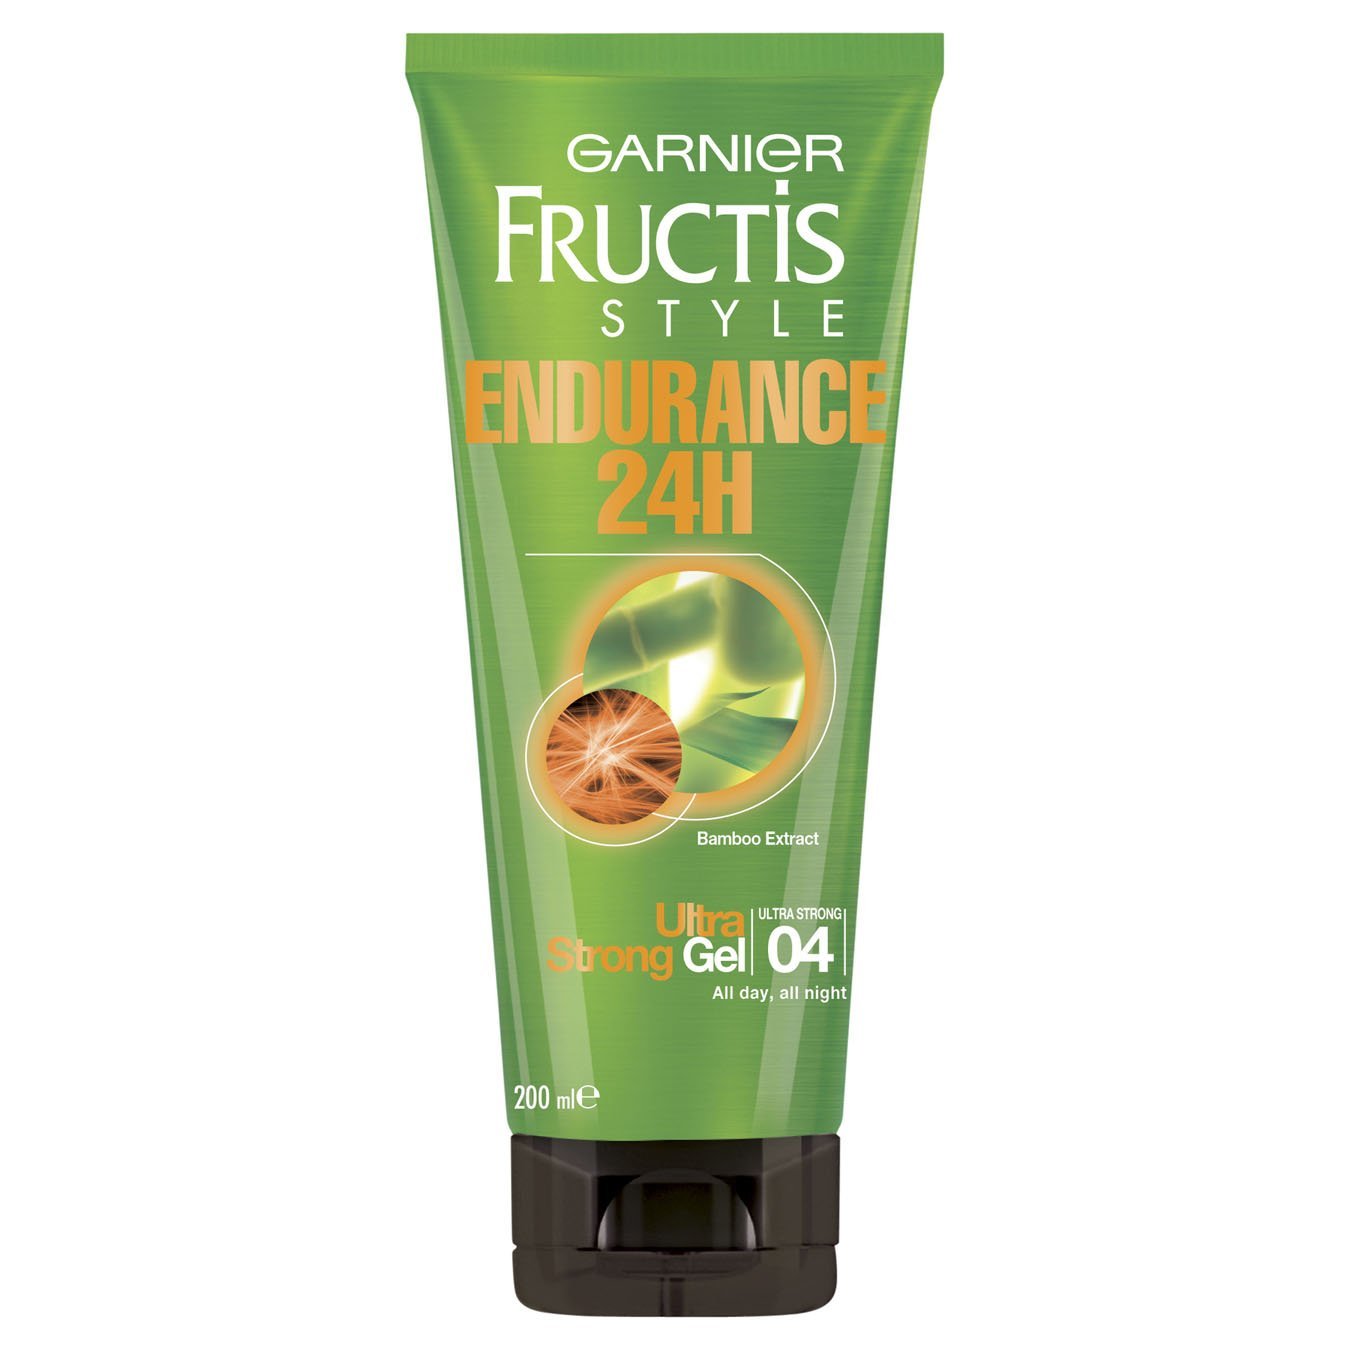 Fructis Style Endurance 24H Gel for Ultra Strong Hold | Garnier® Australia